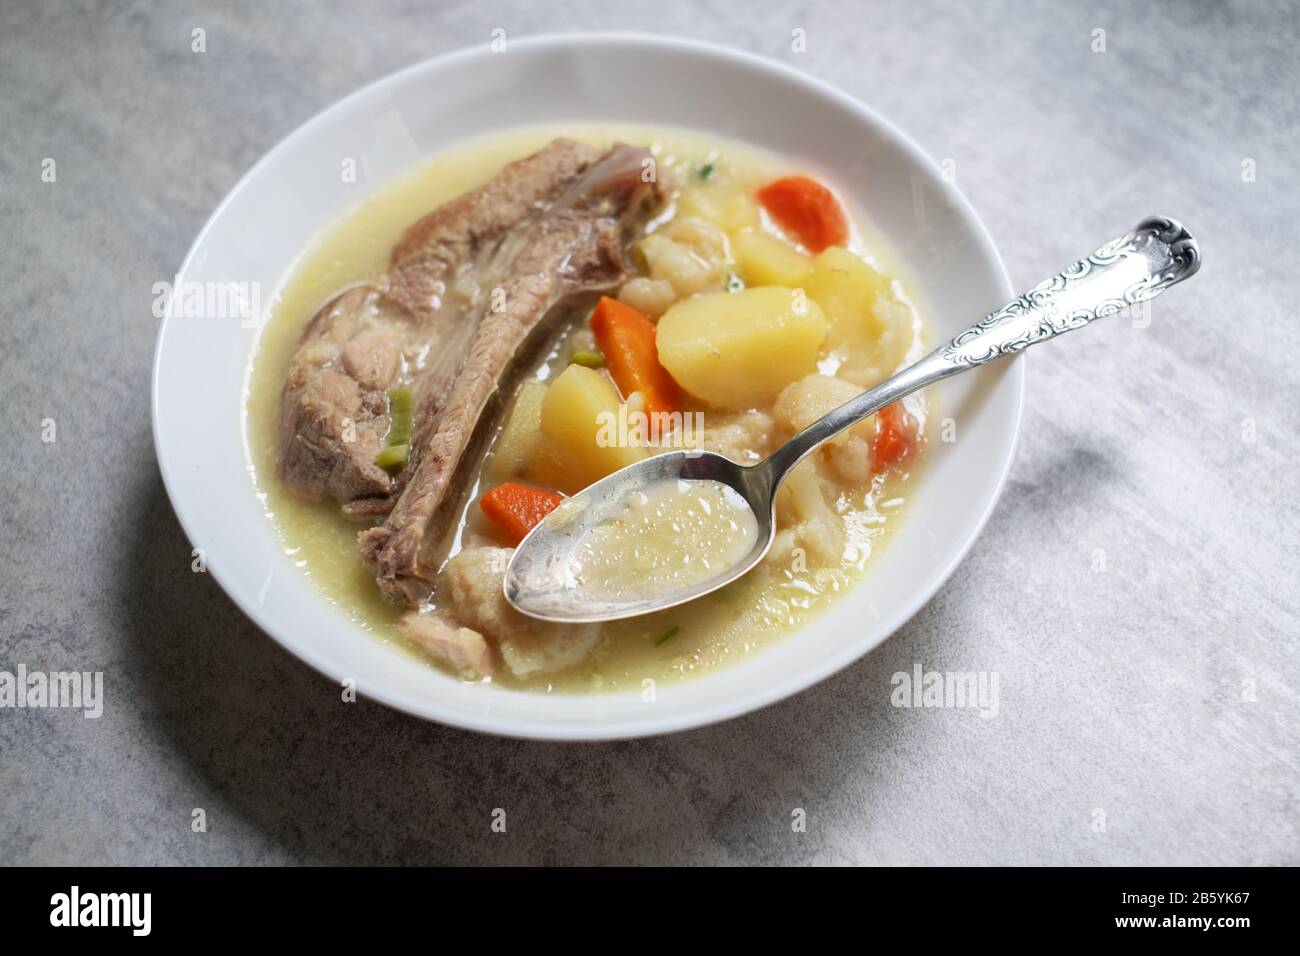 Suppe mit Kartoffel- und Schweinefleischfleisch. Lebensmittelfotografie Stockfoto